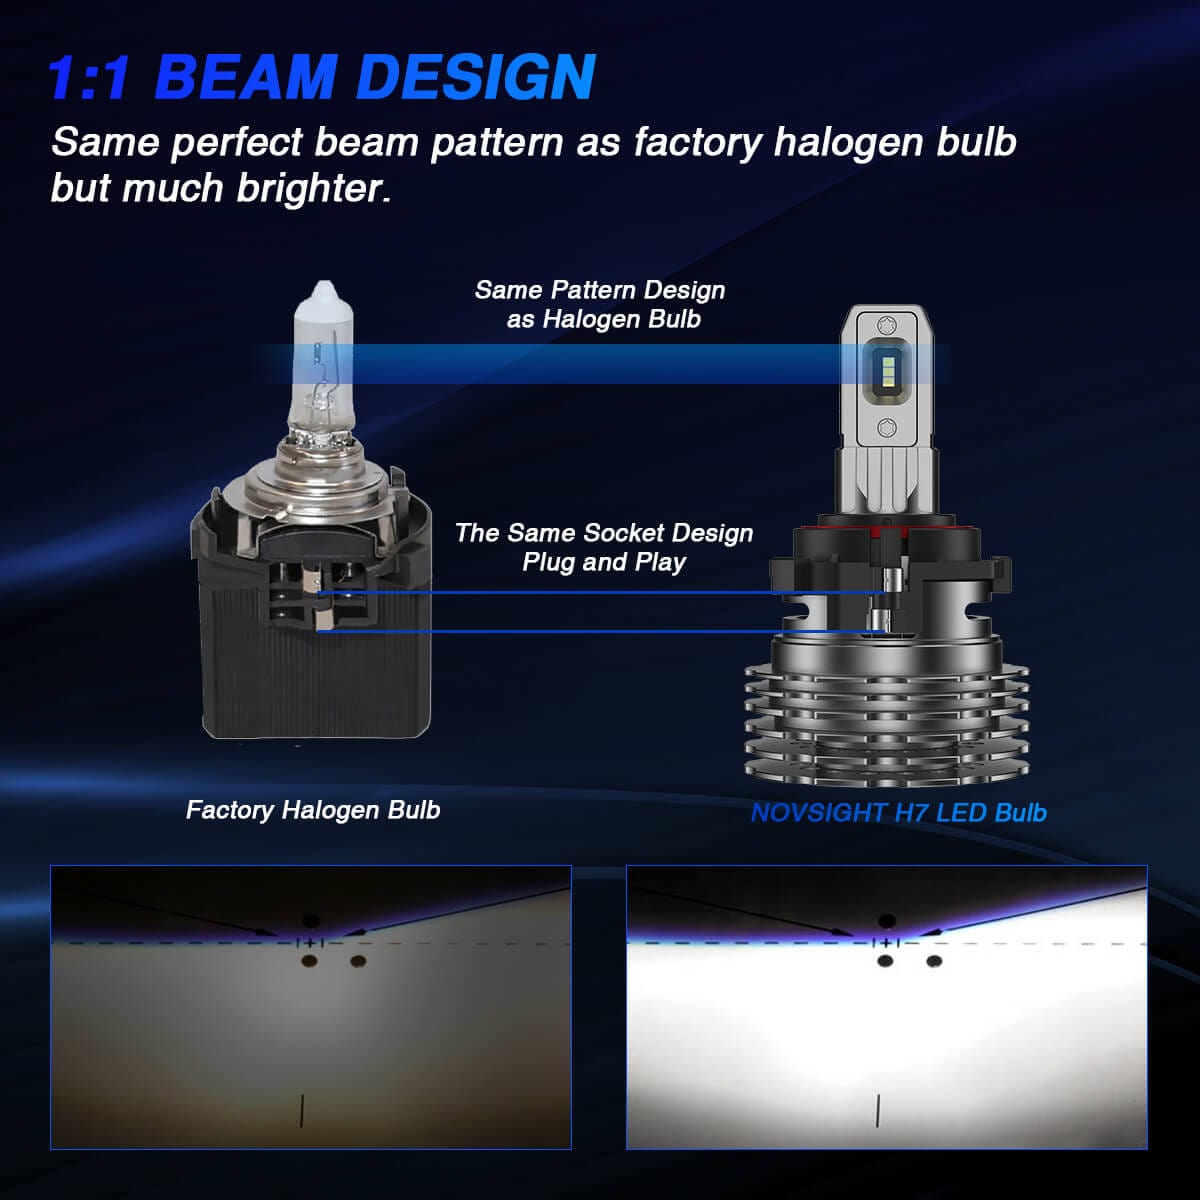 Novsight H7 led bulbs 1:1 beam design as halogen bulbs